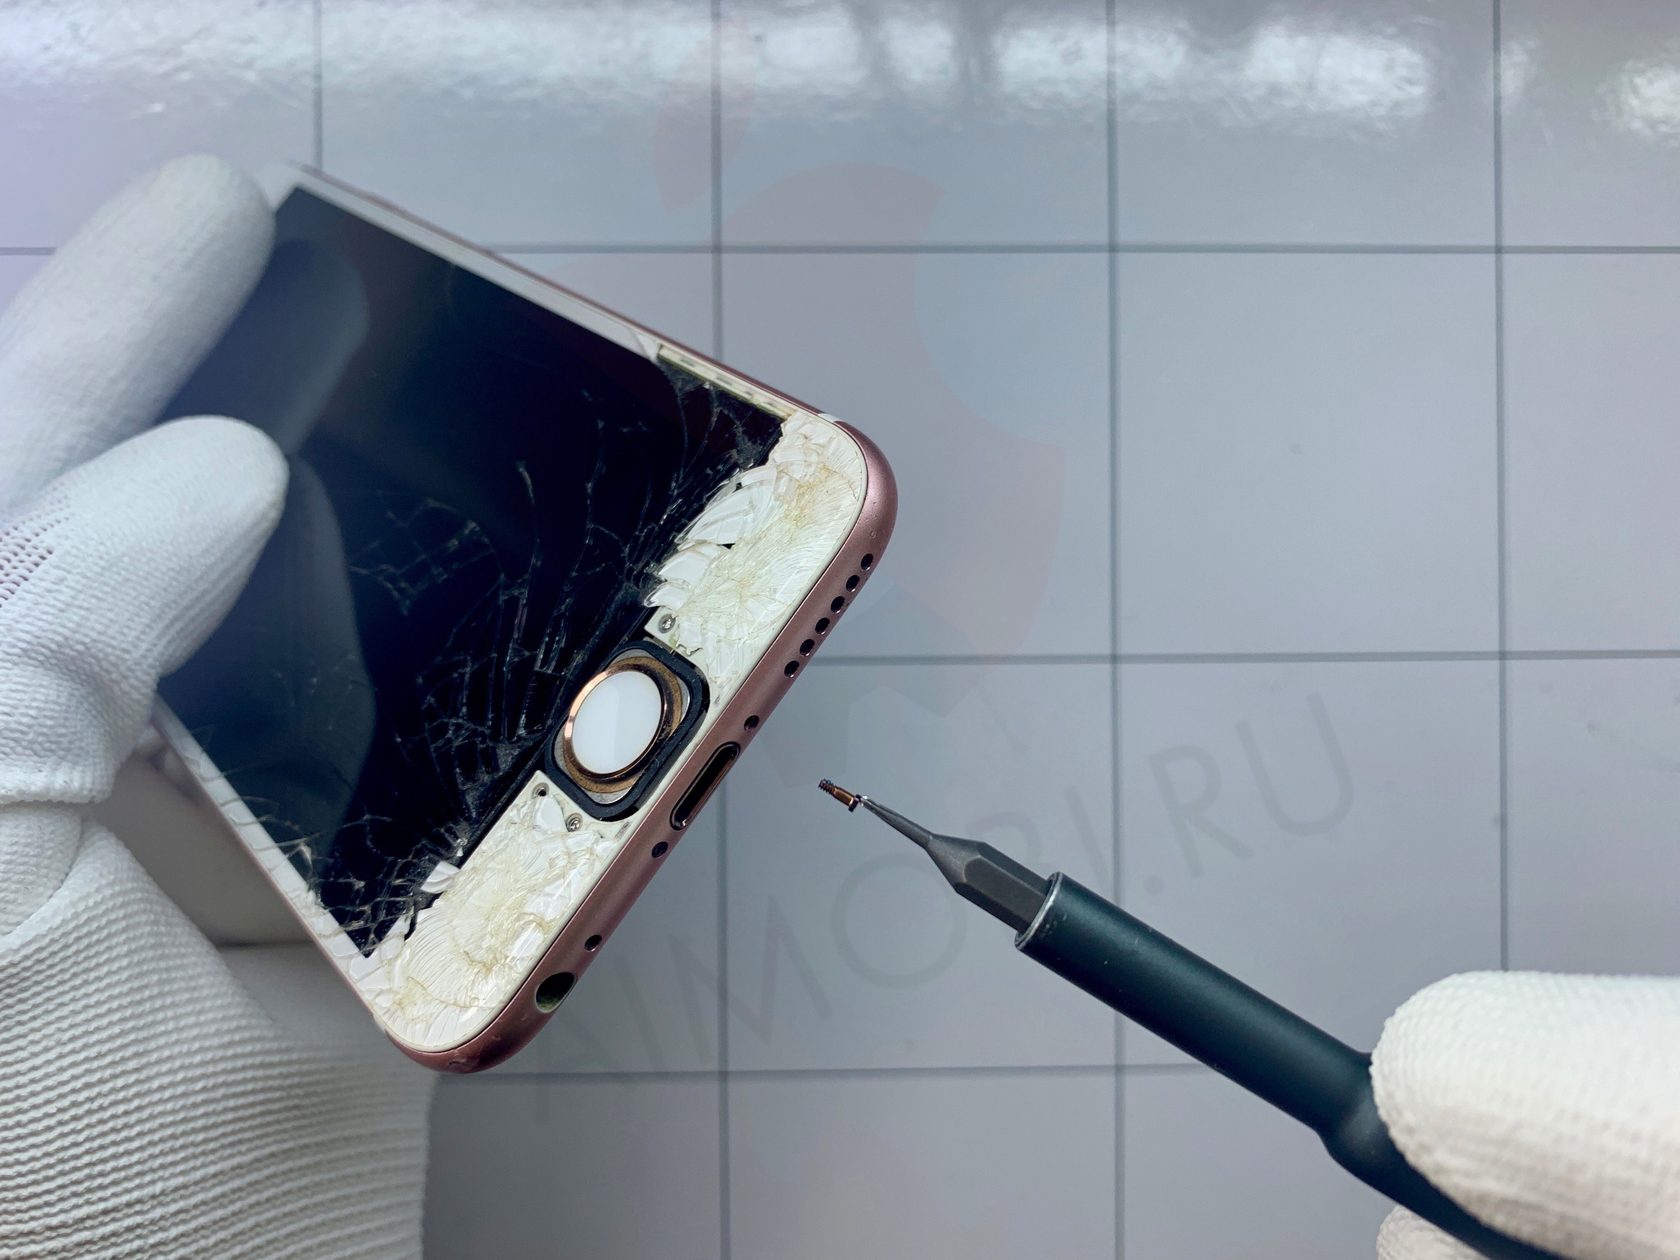 Самостоятельный ремонт мобильных телефонов